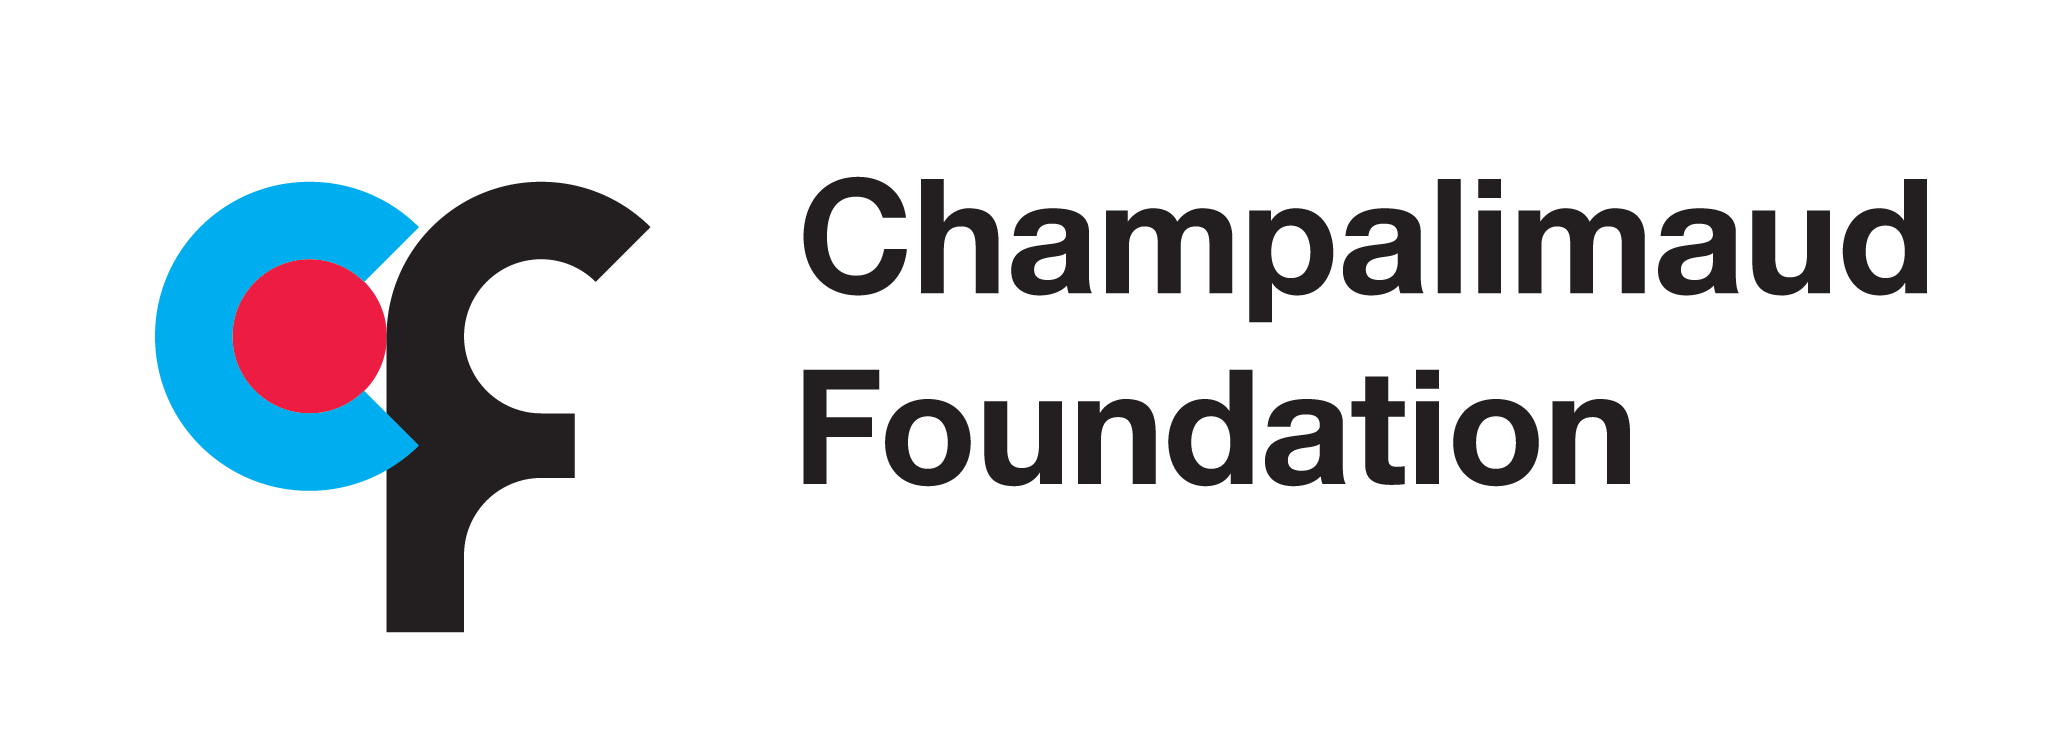 Champalimaud Foundation logo